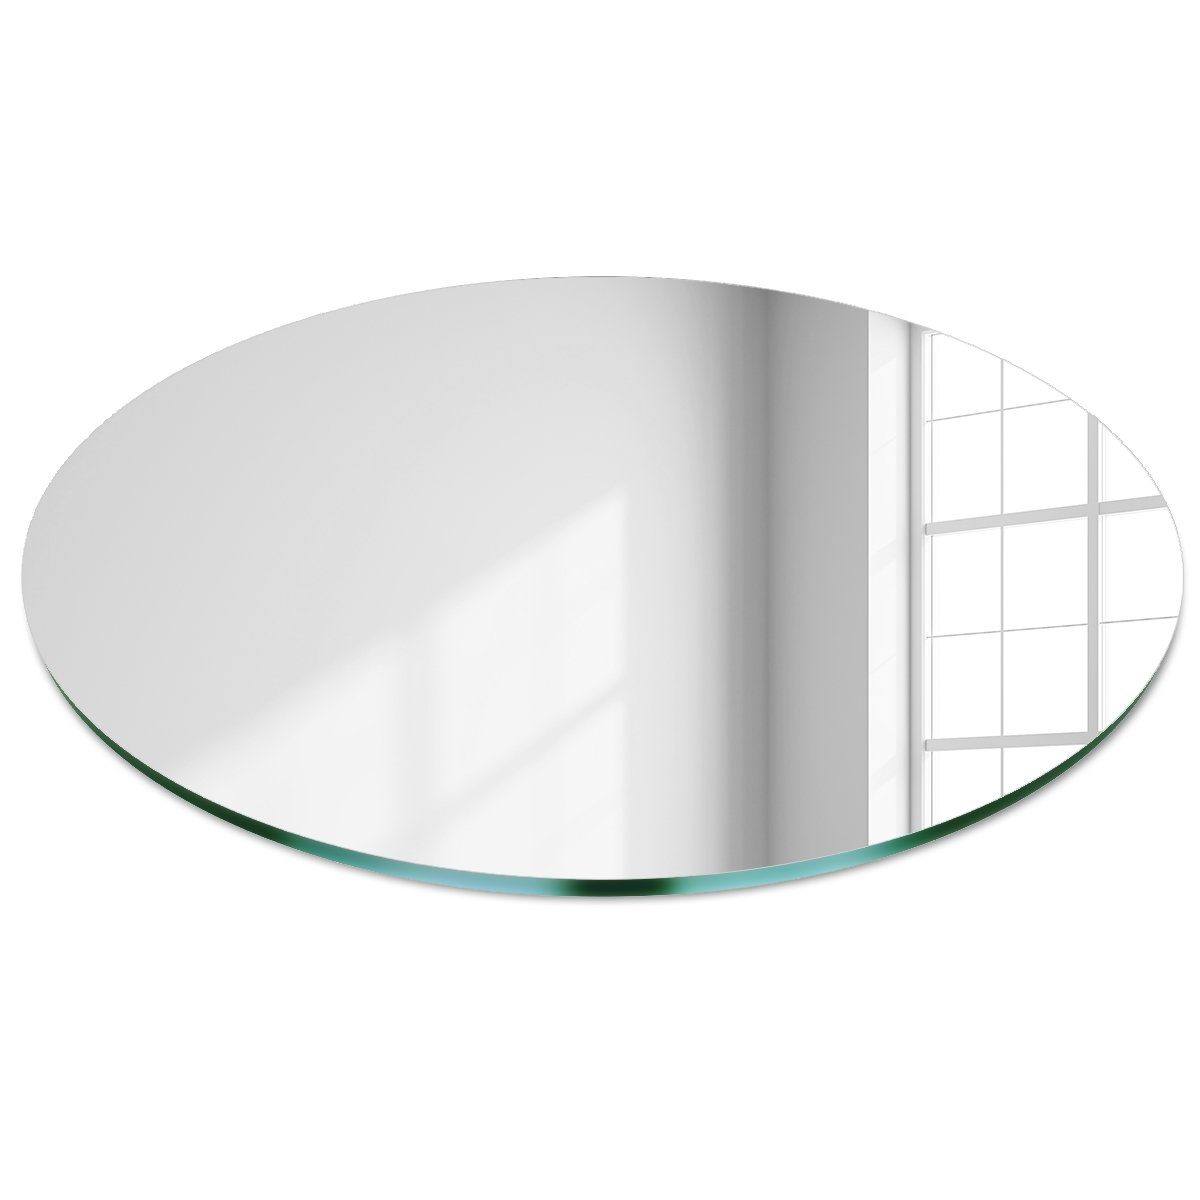 Groß Tulup Wandspiegel Badspiegel Glas 4mm Spiegel Wandspiegel Dekorative